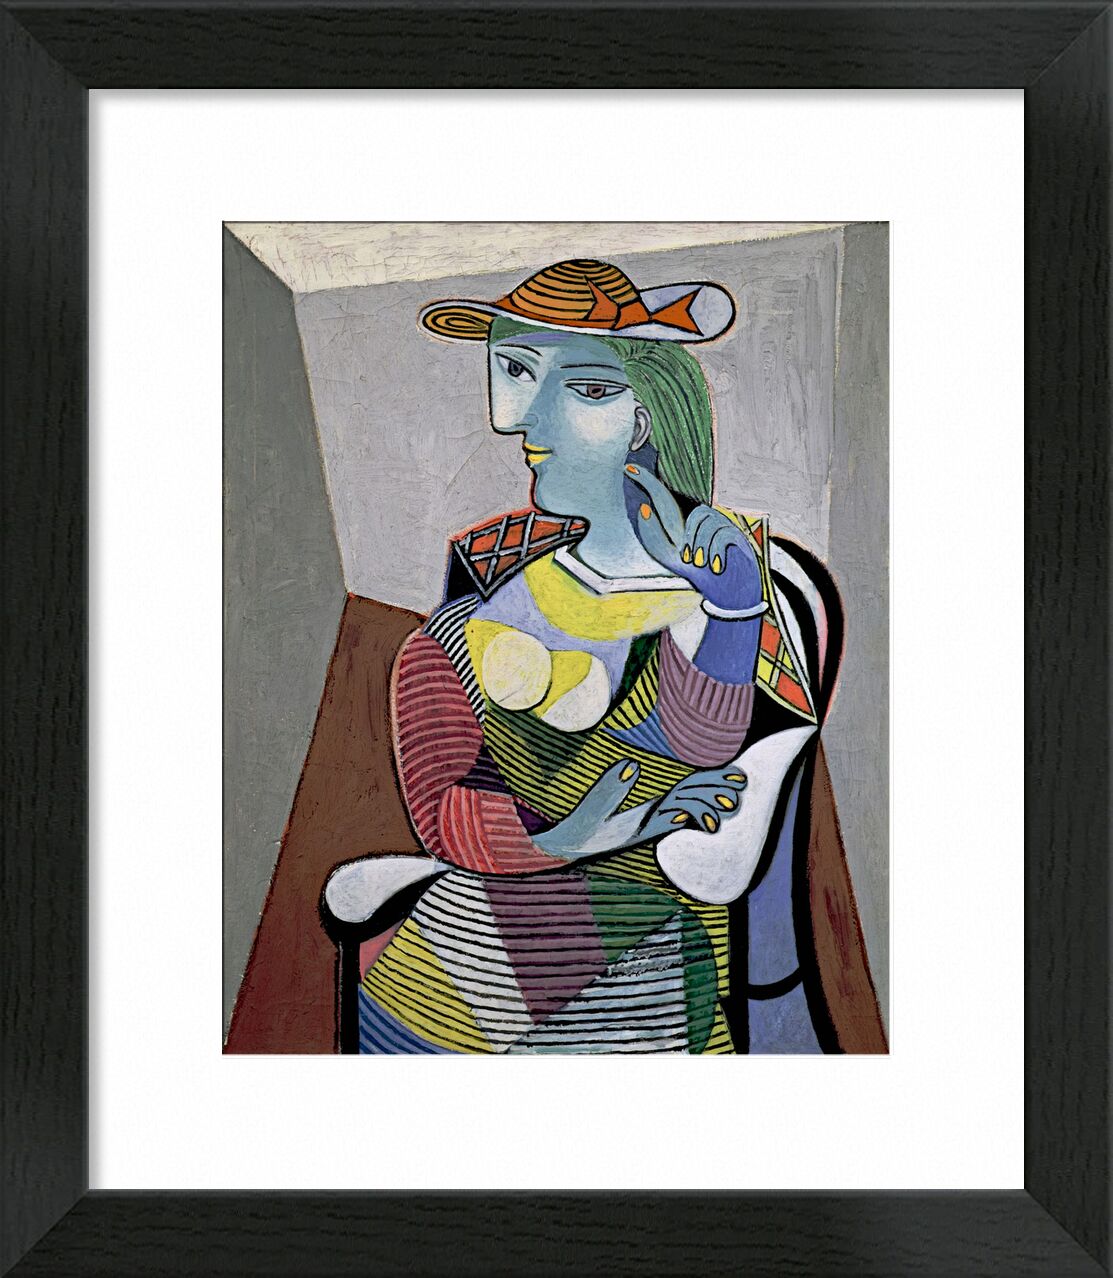 Portrait of Marie-Therese - Picasso von Bildende Kunst, Prodi Art, Picasso, Porträt, abstrakt, Malerei